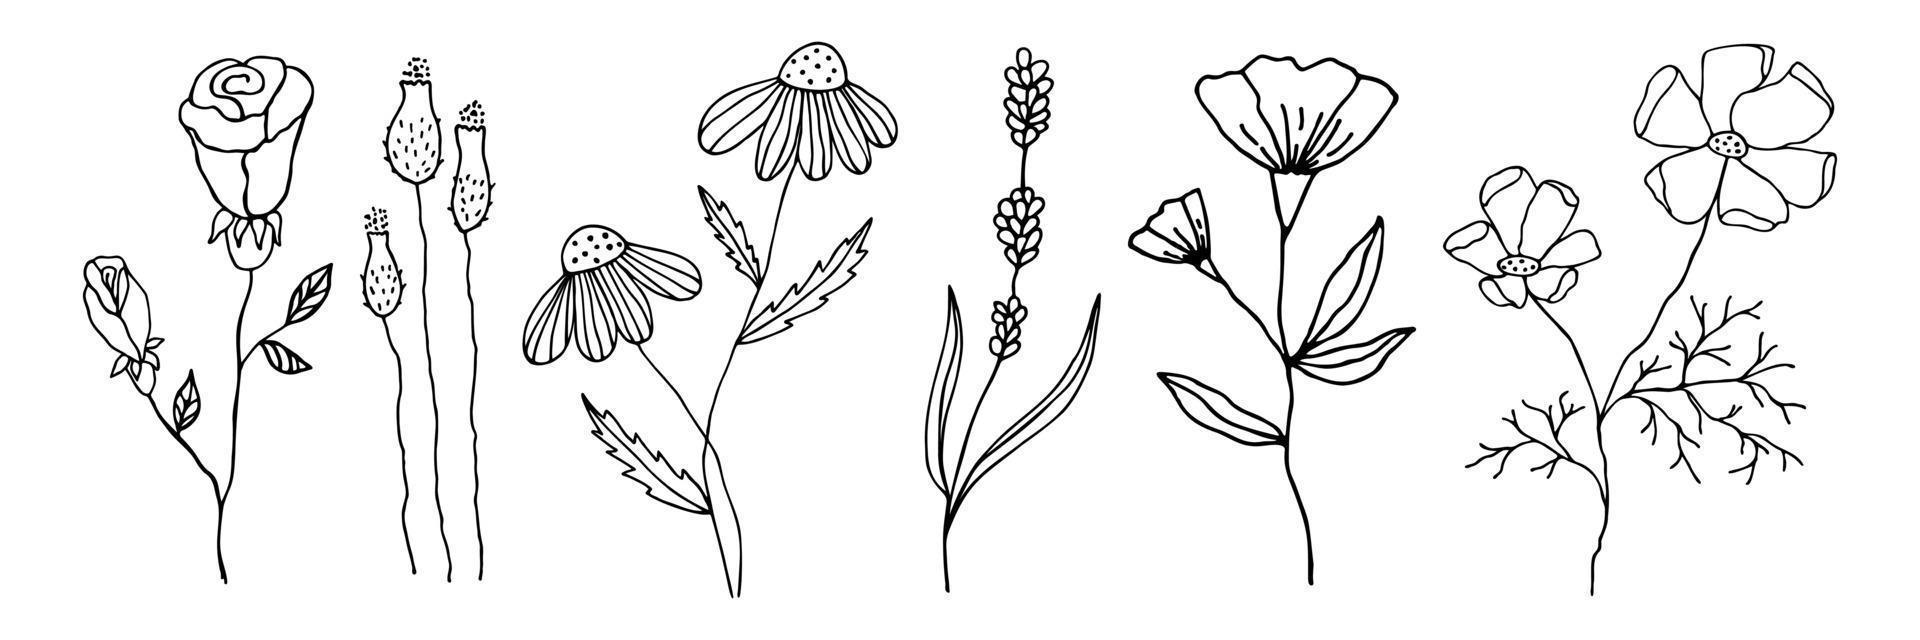 sammlung von gekritzelblumen in einem linearen stil. Reihe von floralen Elementen für jedes Design. Vektor schwarze Umriss Blumen handgezeichnet isoliert auf weißem Hintergrund.